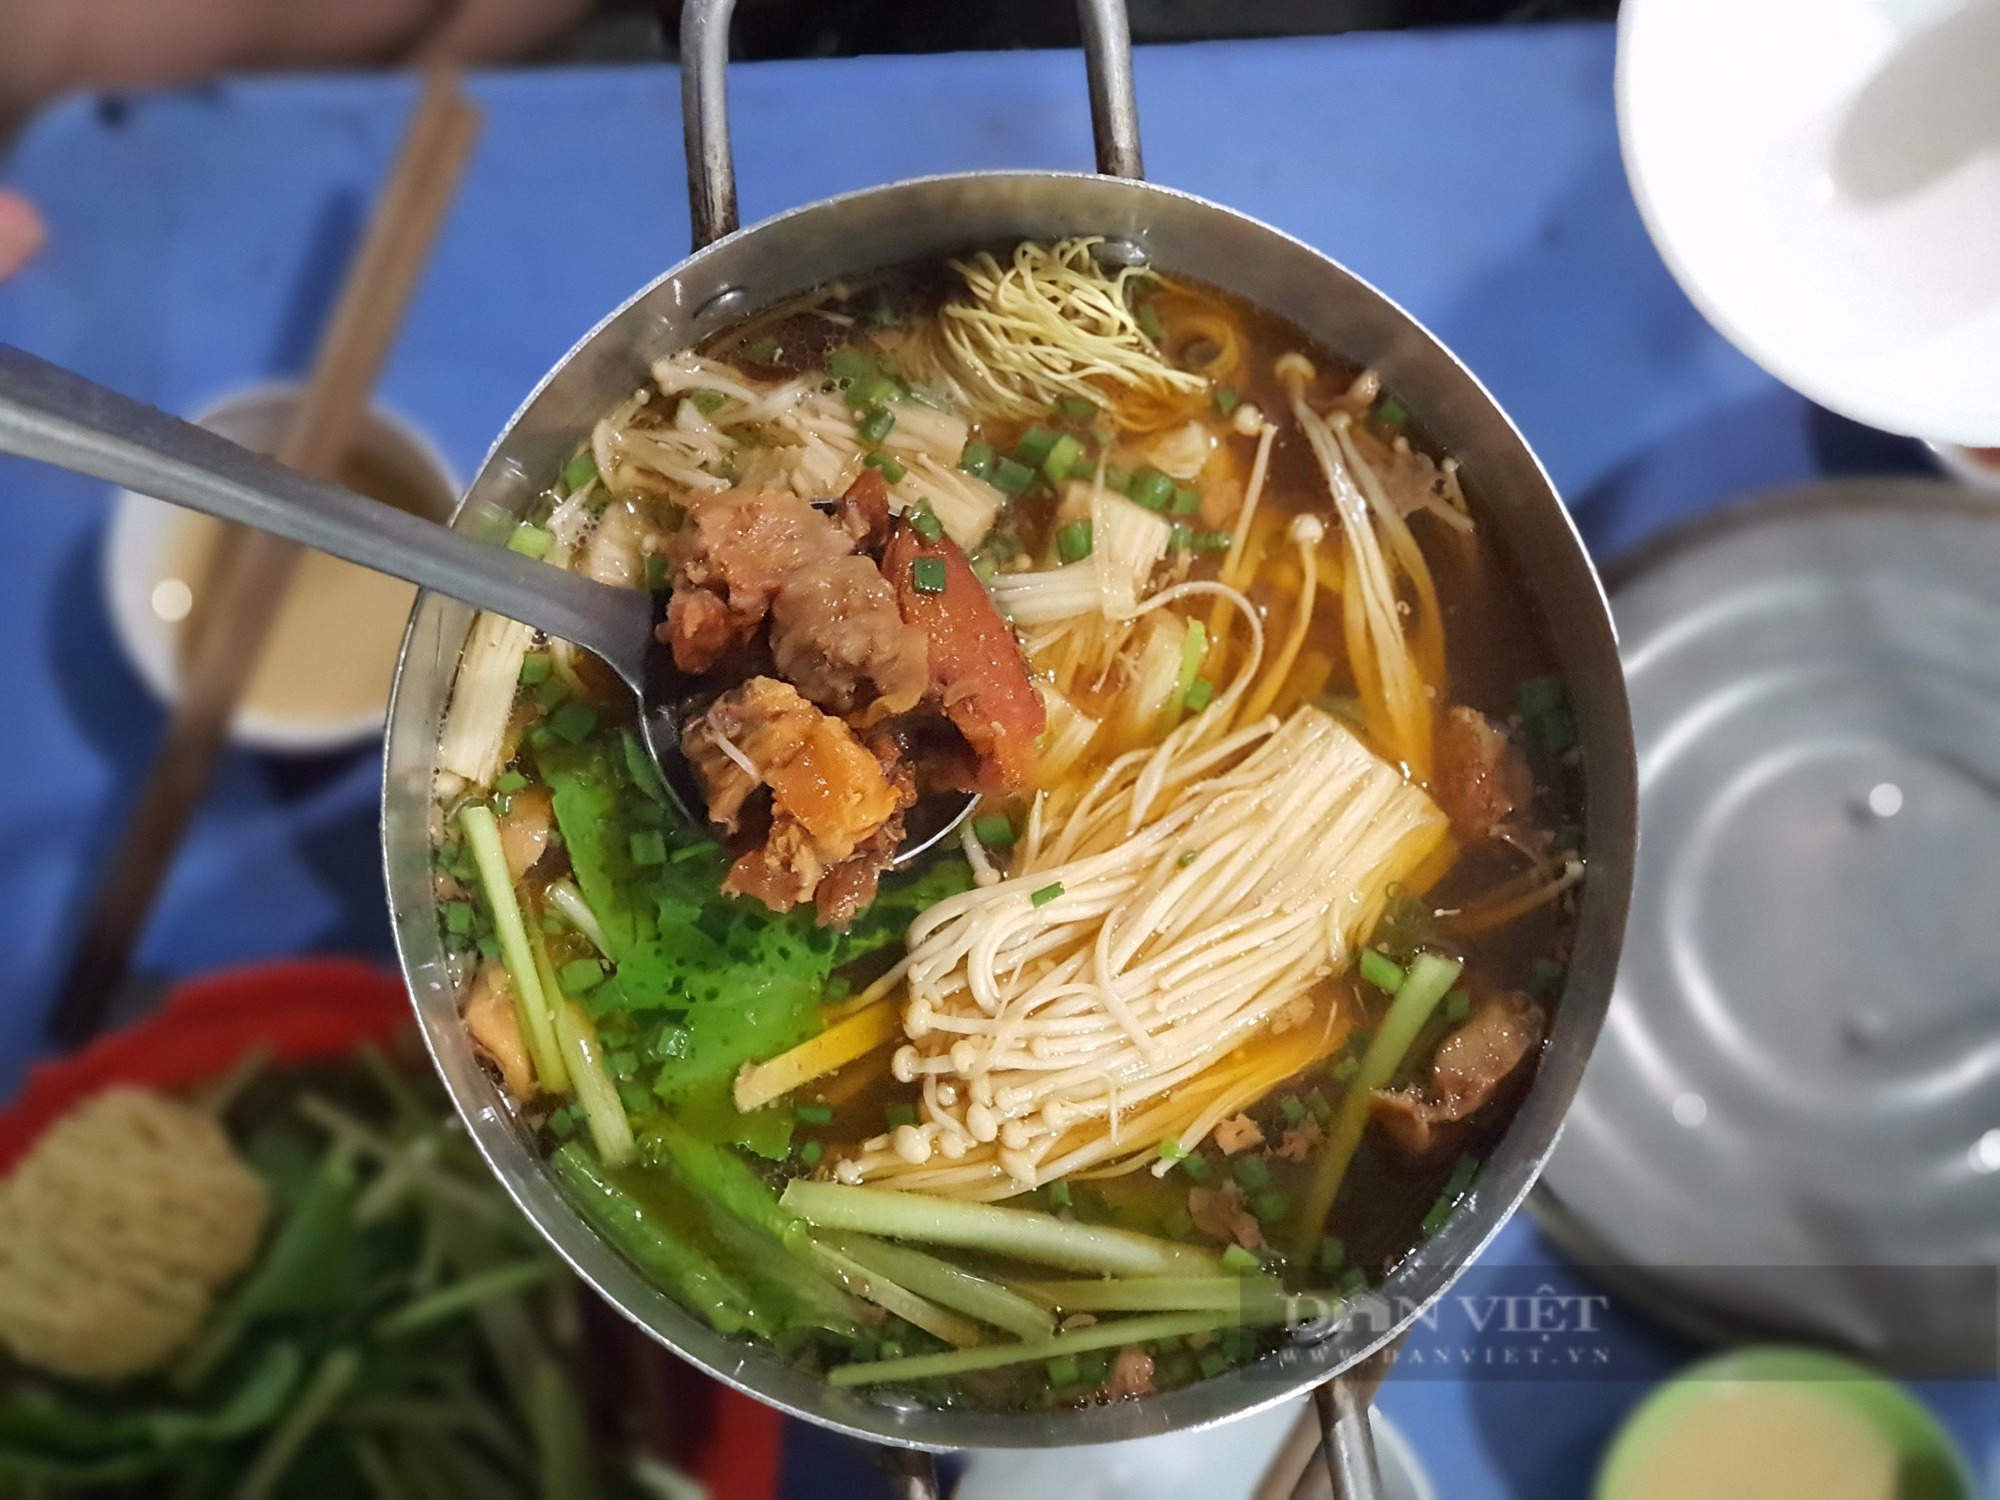 Sài Gòn quán: Lẩu bò kho Campuchia trên bếp than hồng, hương vị độc lạ khu Vườn Chuối-2